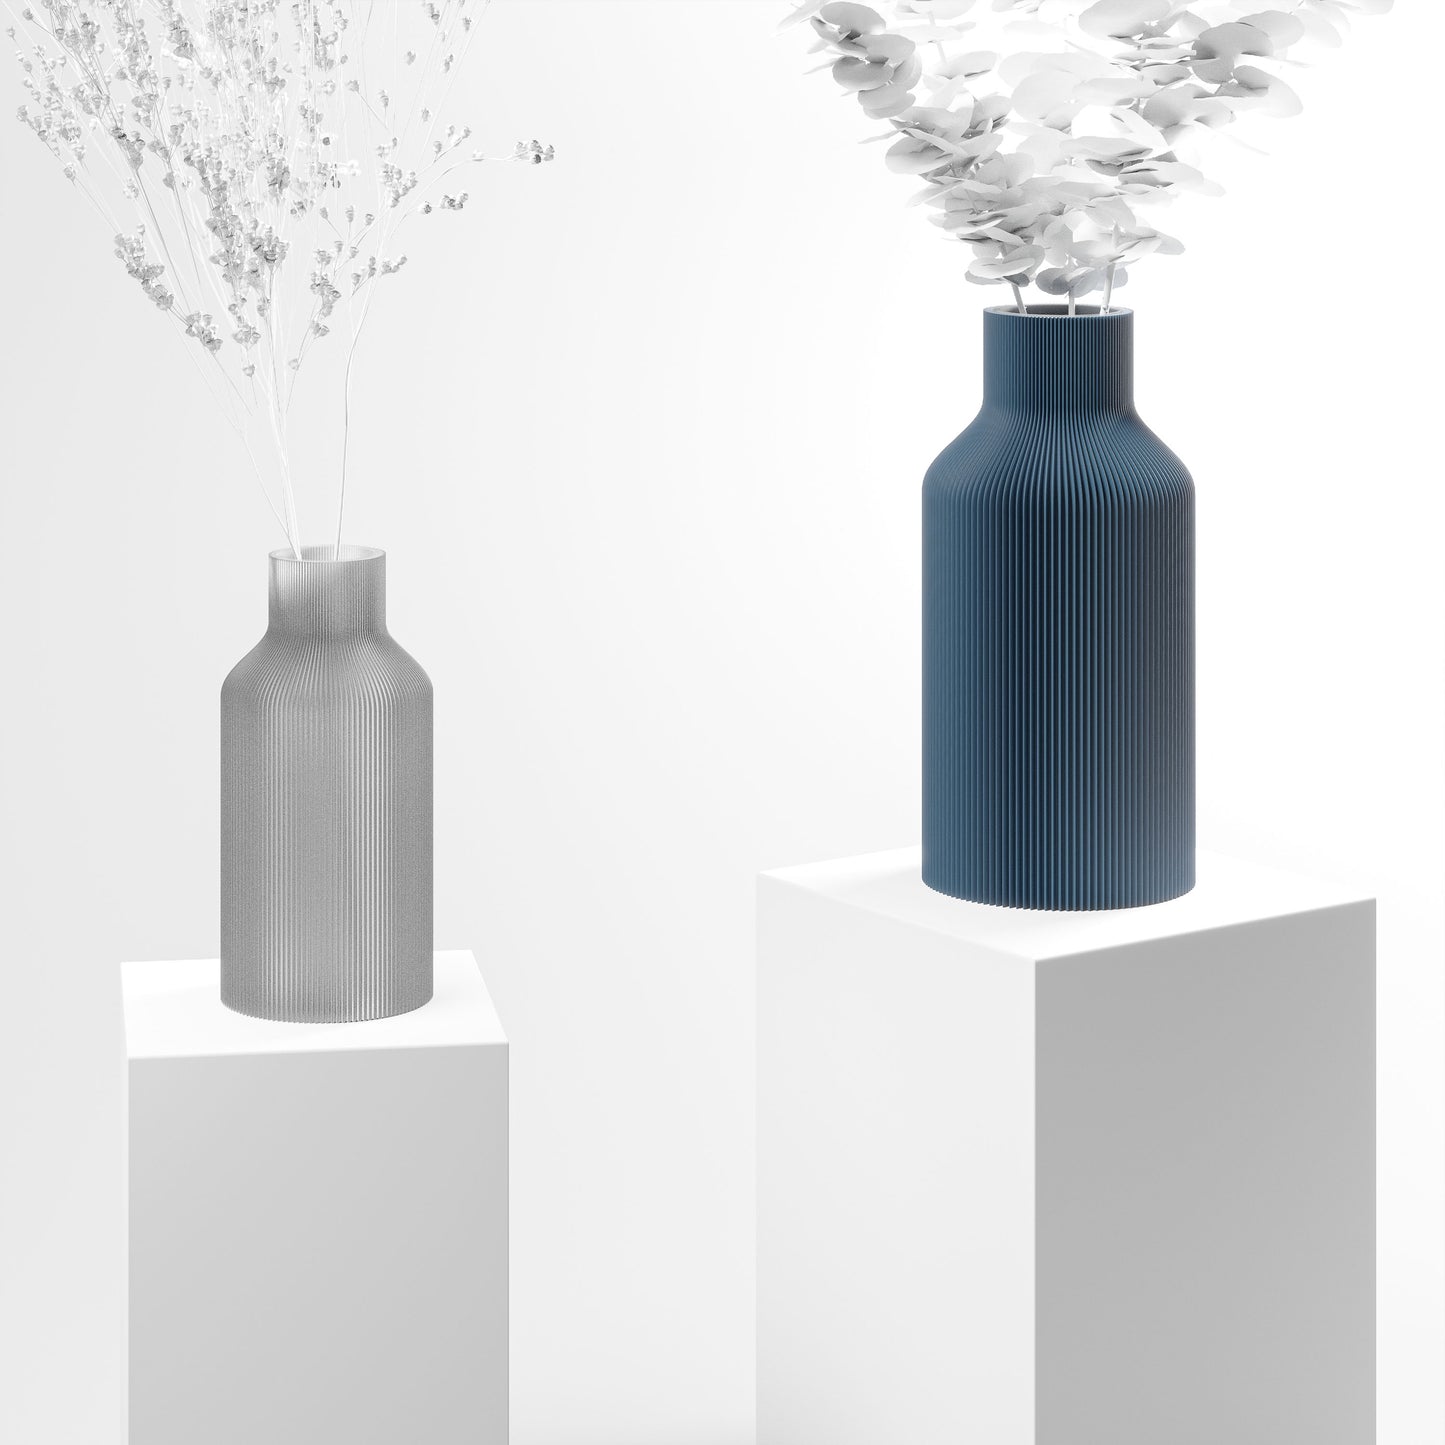 Stylische 3D Druck Vase mit feinen Rillen | 100% recyclebar | Form: Flasche | Farbe: blau matt groß